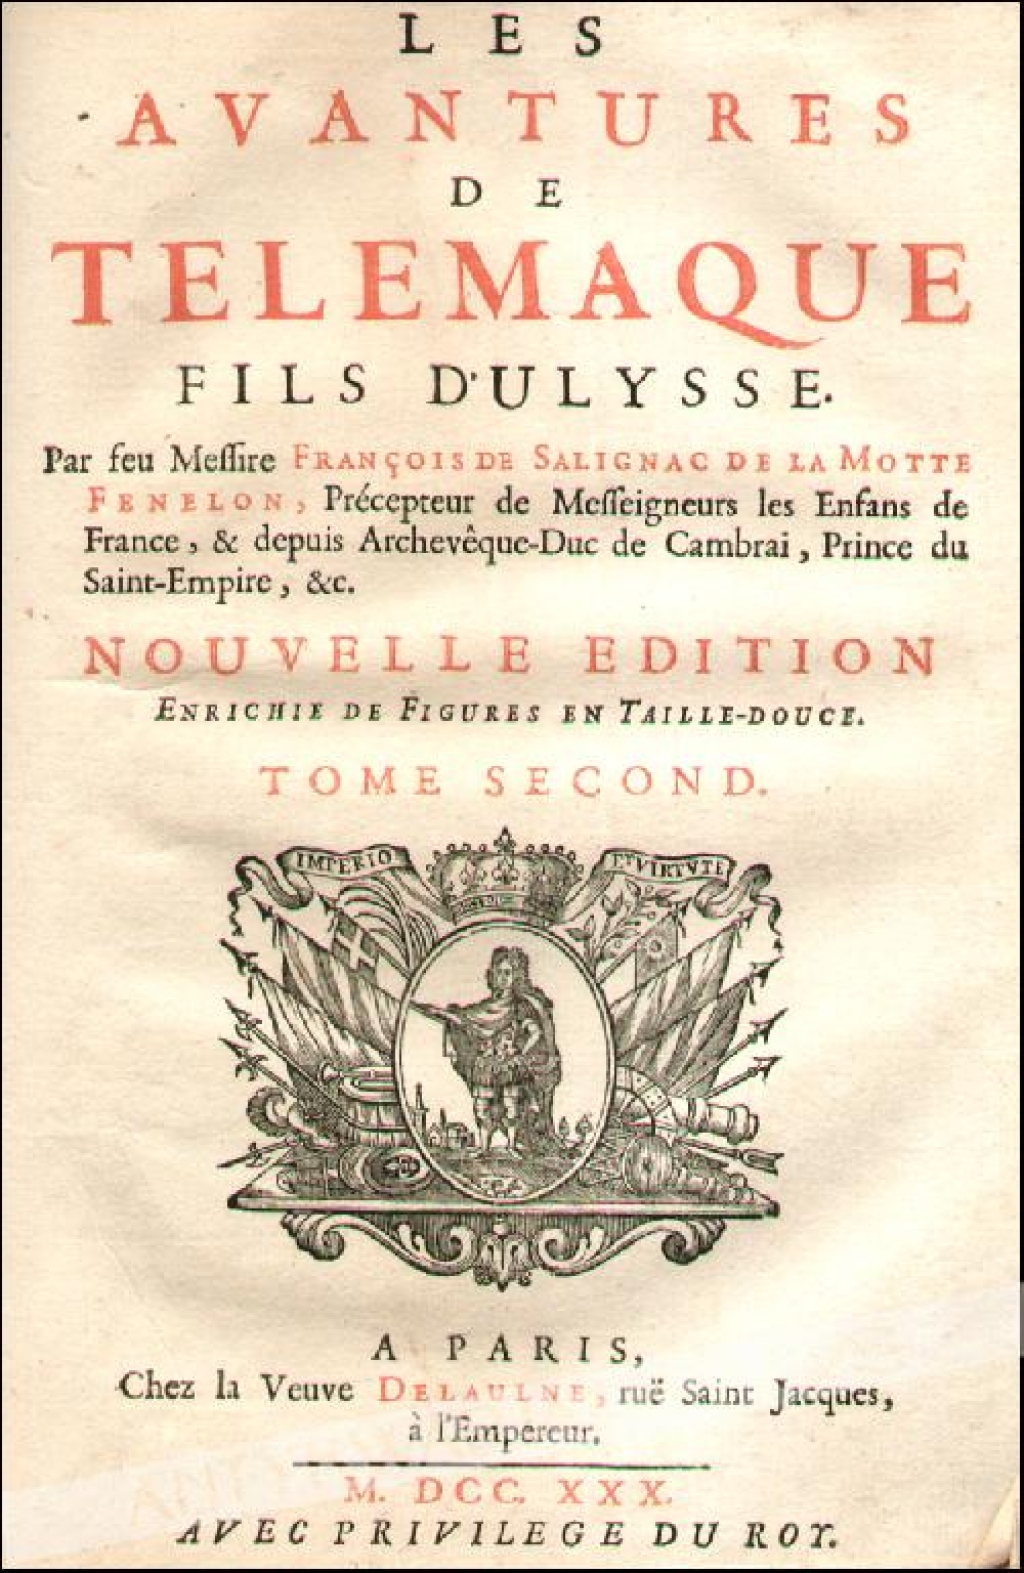 Les Avantures de Telemaque fils d'Ulysse. Nouvelle edition, enrichie de Figures en Taille-Douce. Tome premier et second [współoprawne]